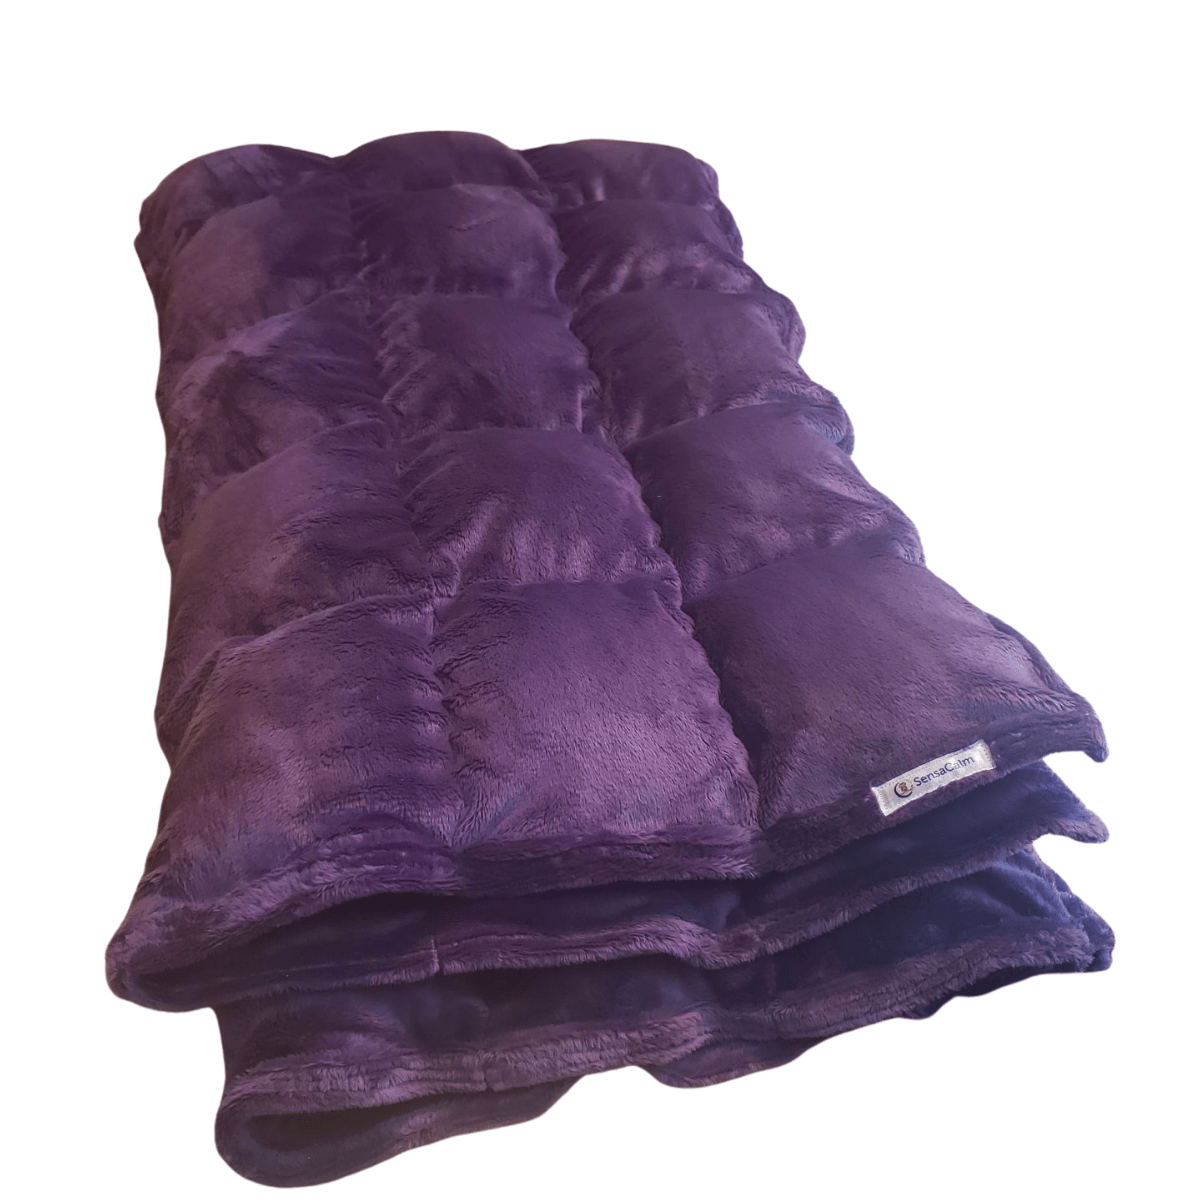 SensaCalm Cuddle Weighted Blanket - Super Soft Cuddle Violet Custom Weighted Blanket